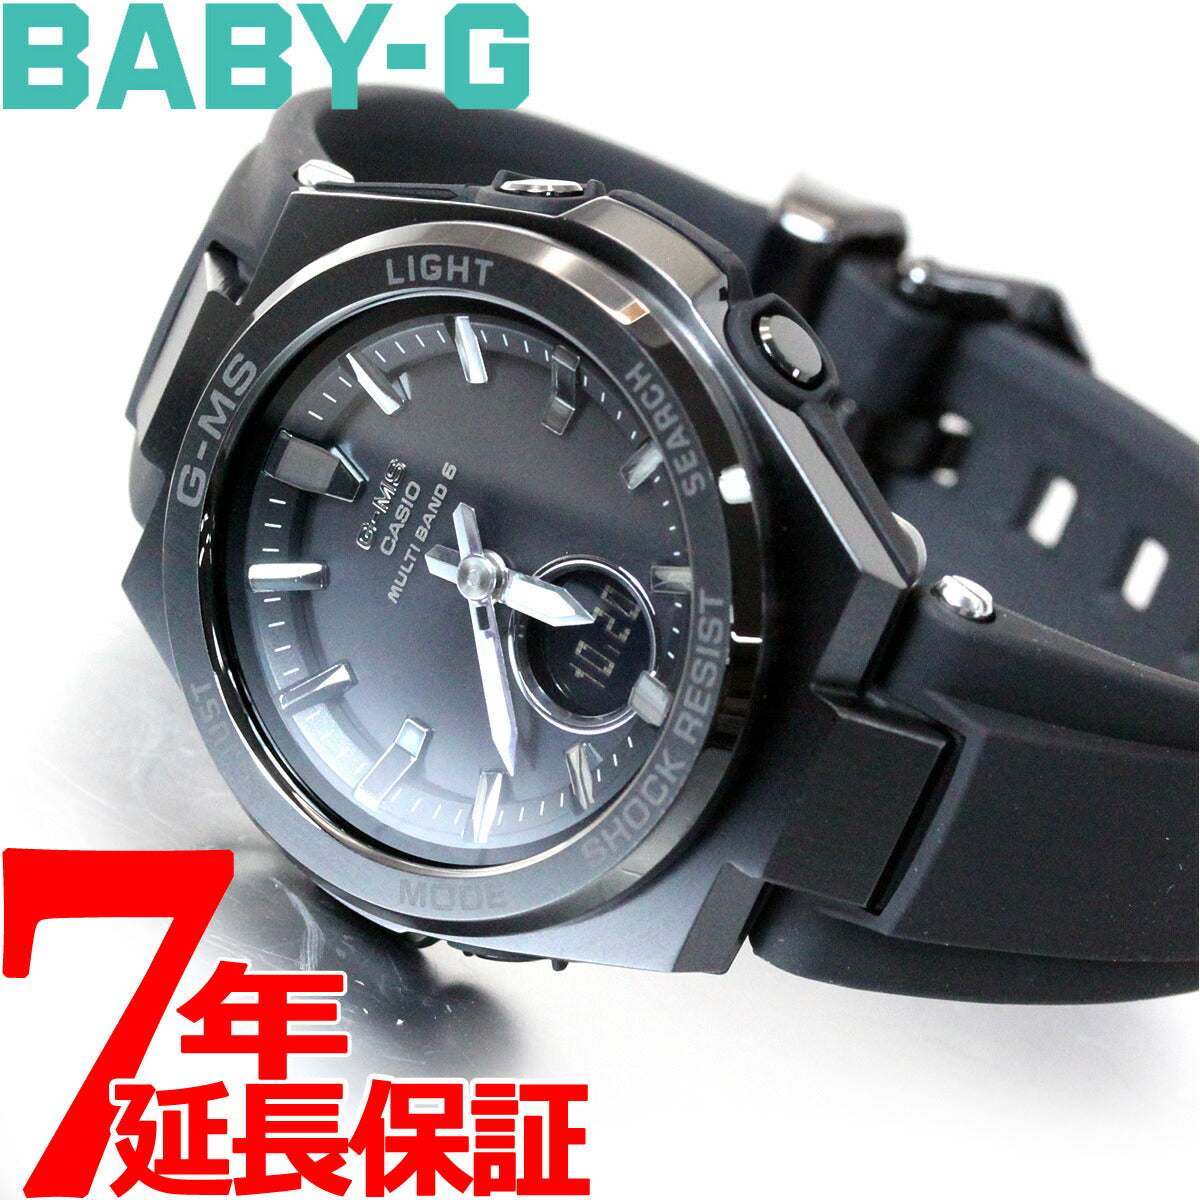 8,820円CASIO Baby-G MSG-W200G-1A2JF【国内正規品】